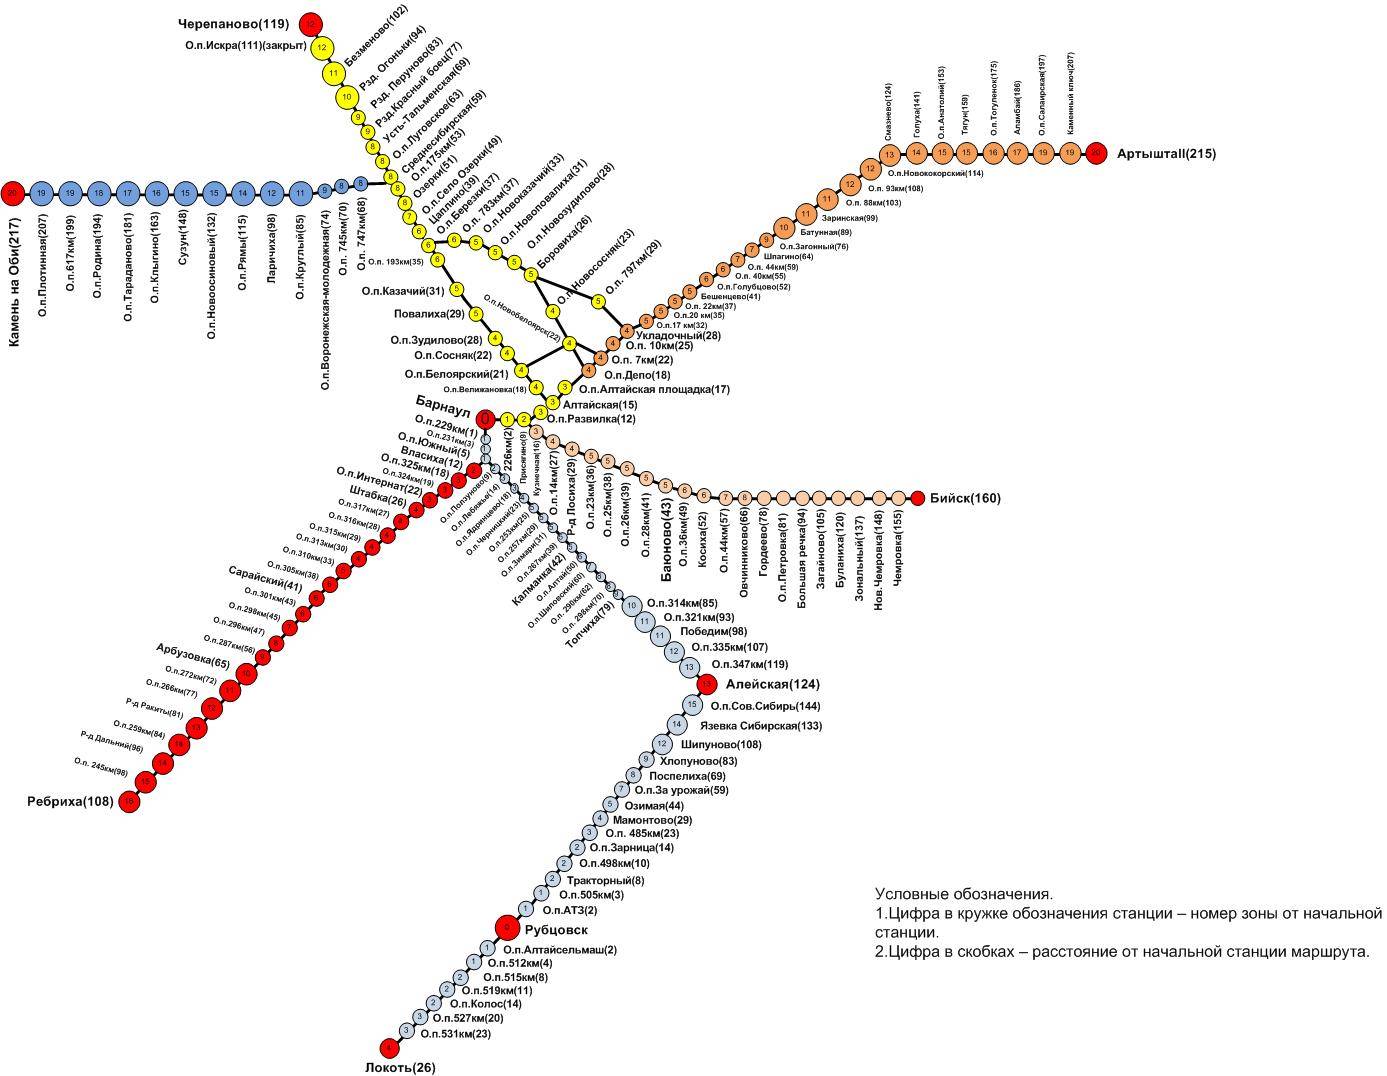 Горьковская железная дорога: схема движения, время отправки, бронирование - просто о технологиях